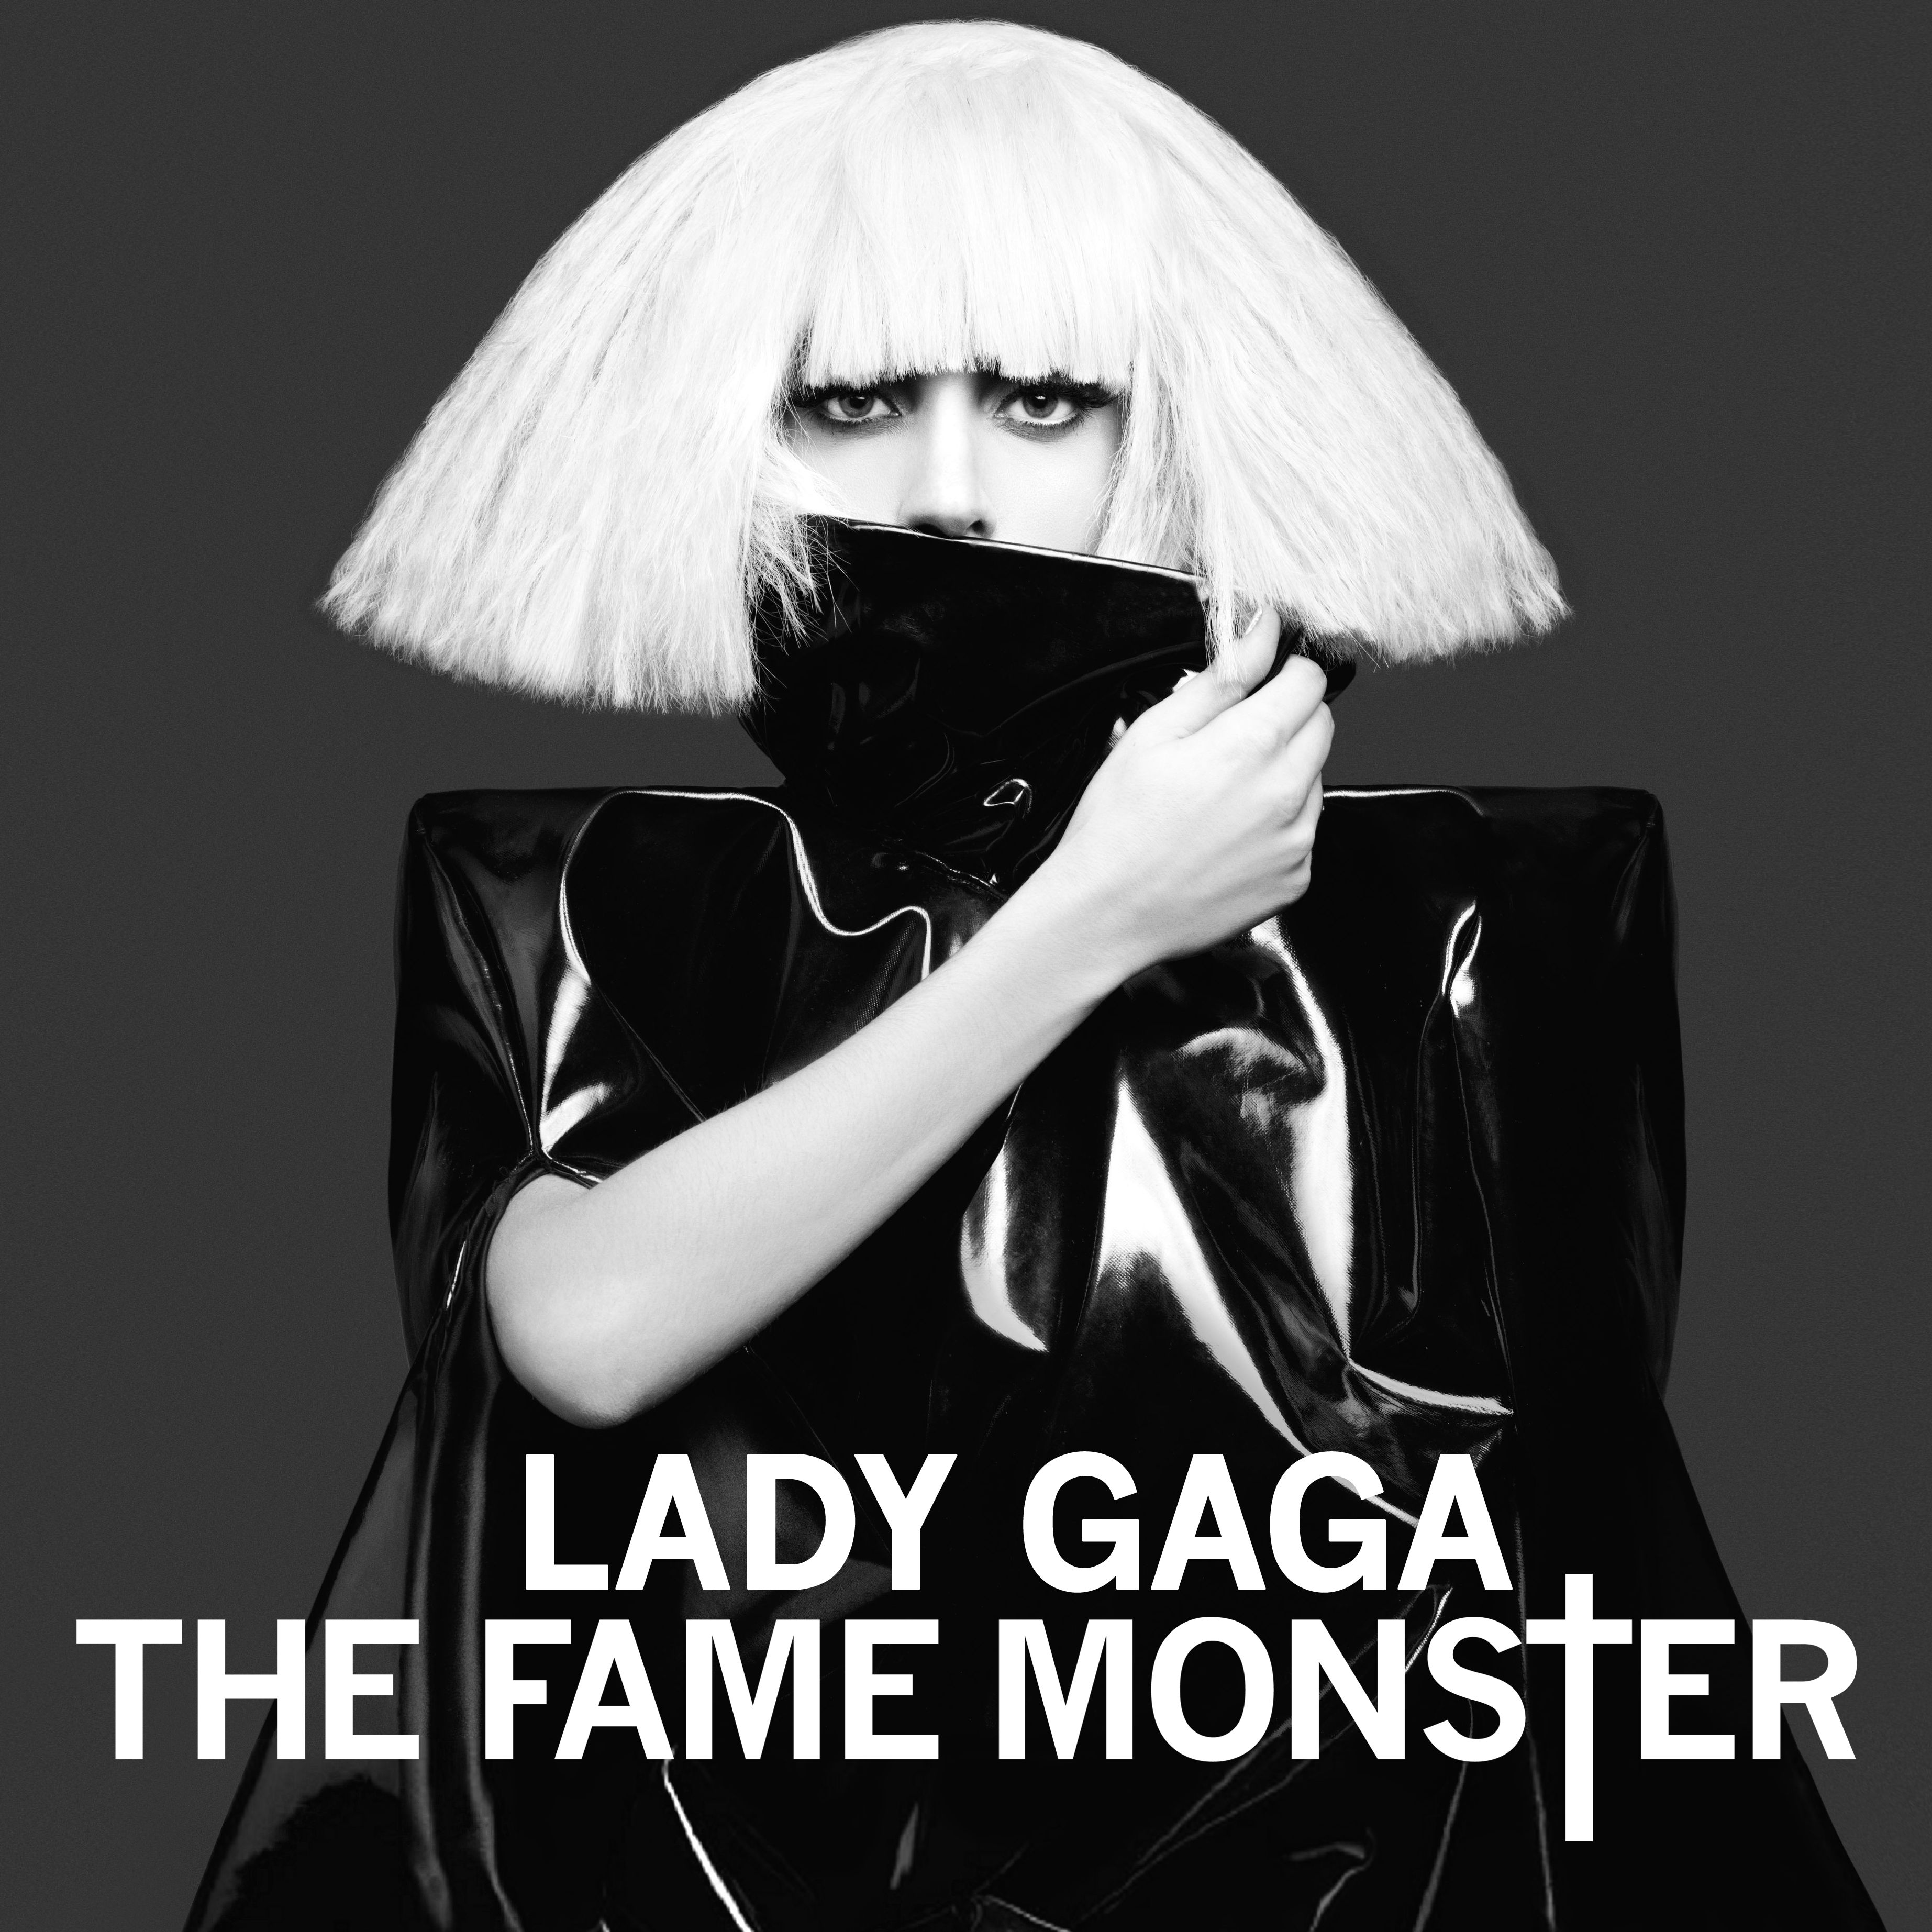 Resultado de imagem para the fame monster lady gaga album cover HD